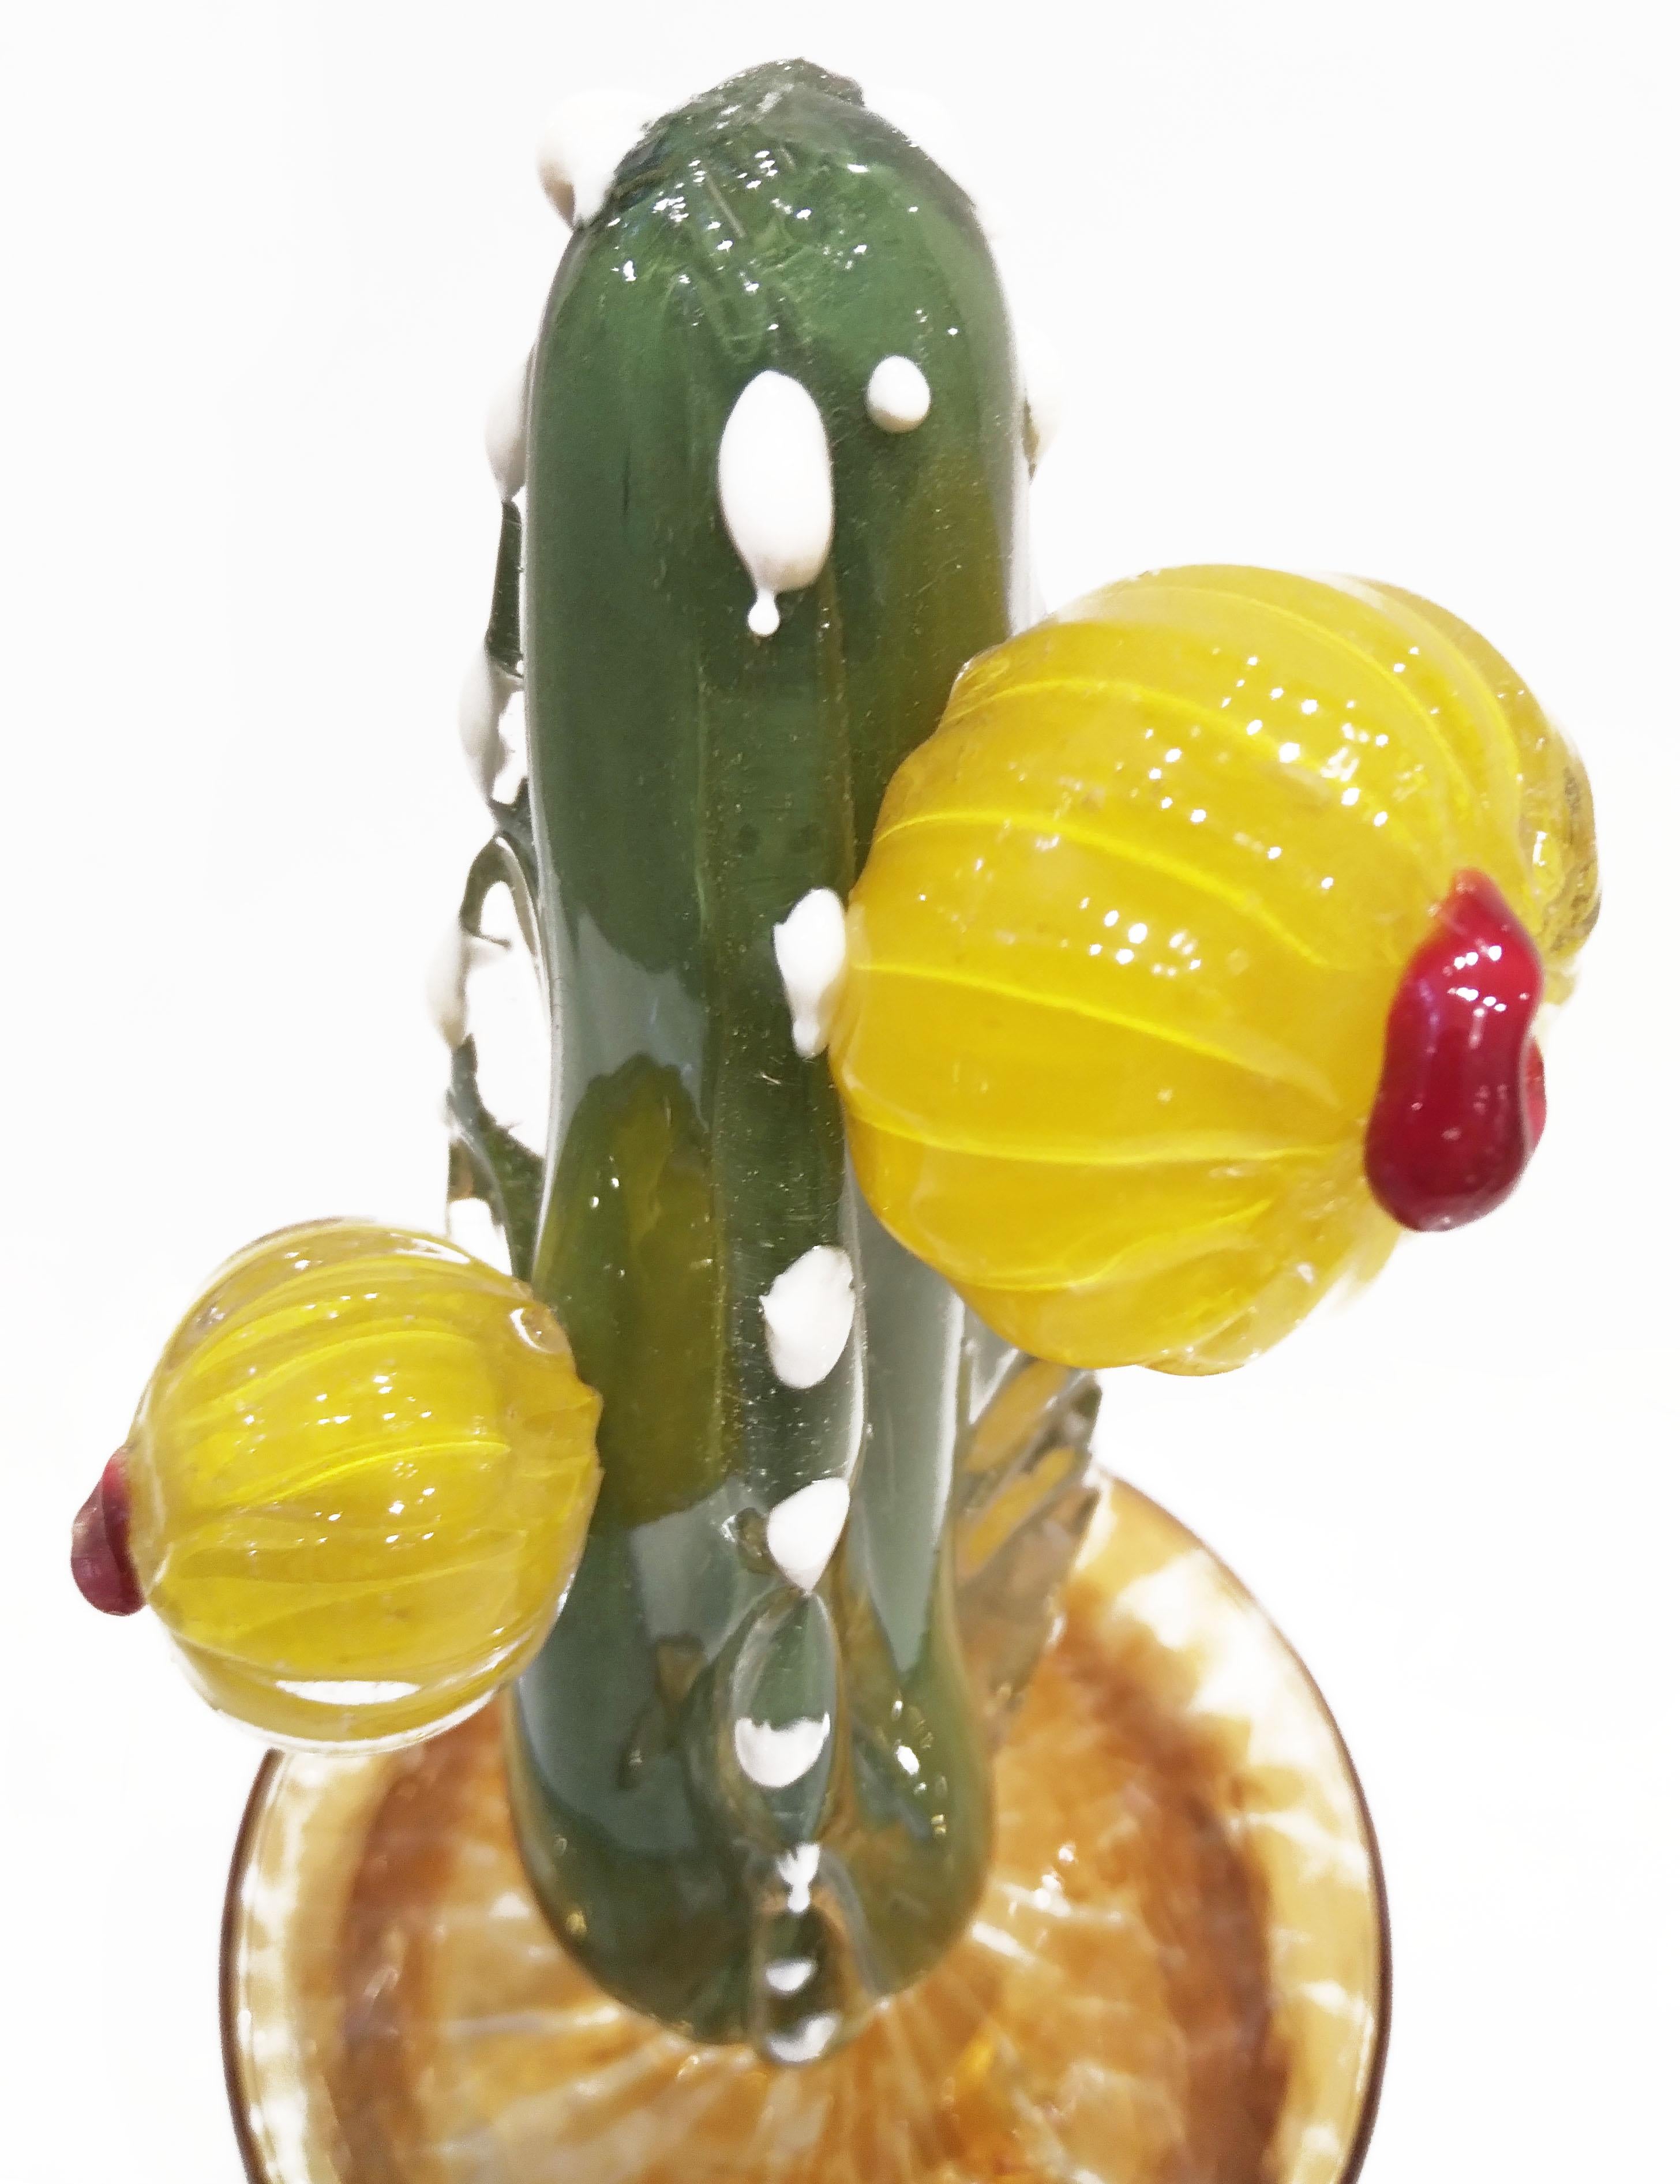 Cactus en verre contemporain italien de collection en édition limitée, entièrement réalisé à la main à Murano, au design moderne et minimaliste soufflé par Fornace Mian, de forme organique réaliste et moderniste en verre de Murano vert mousse